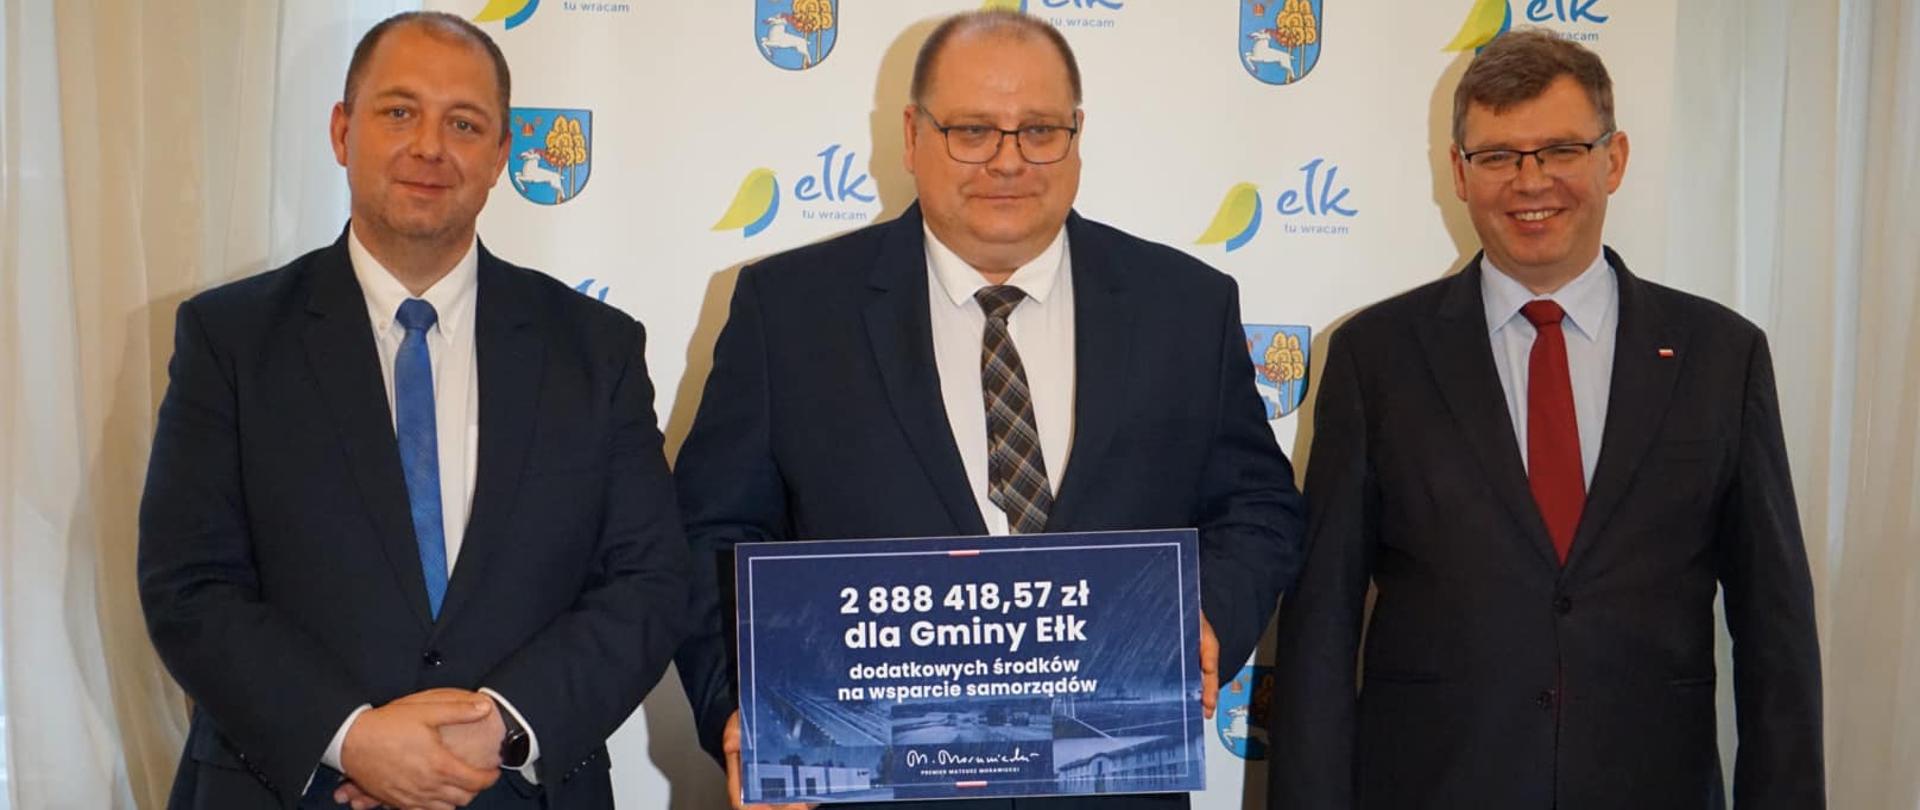 Prawie 25 mln zł dostały samorządy z powiatu ełckiego